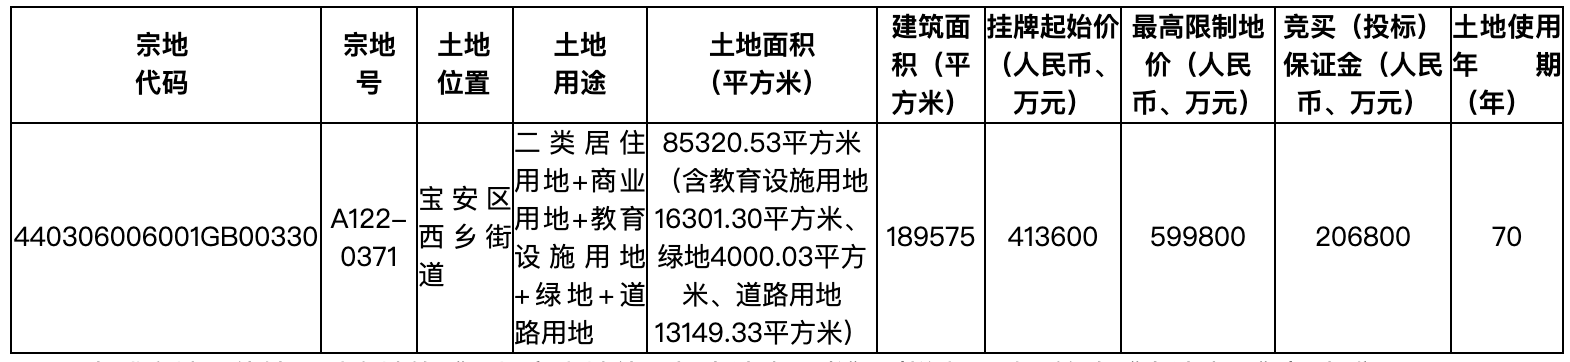 快讯|总价超294.4亿元 深圳一次性集中推出8宗商、住用地